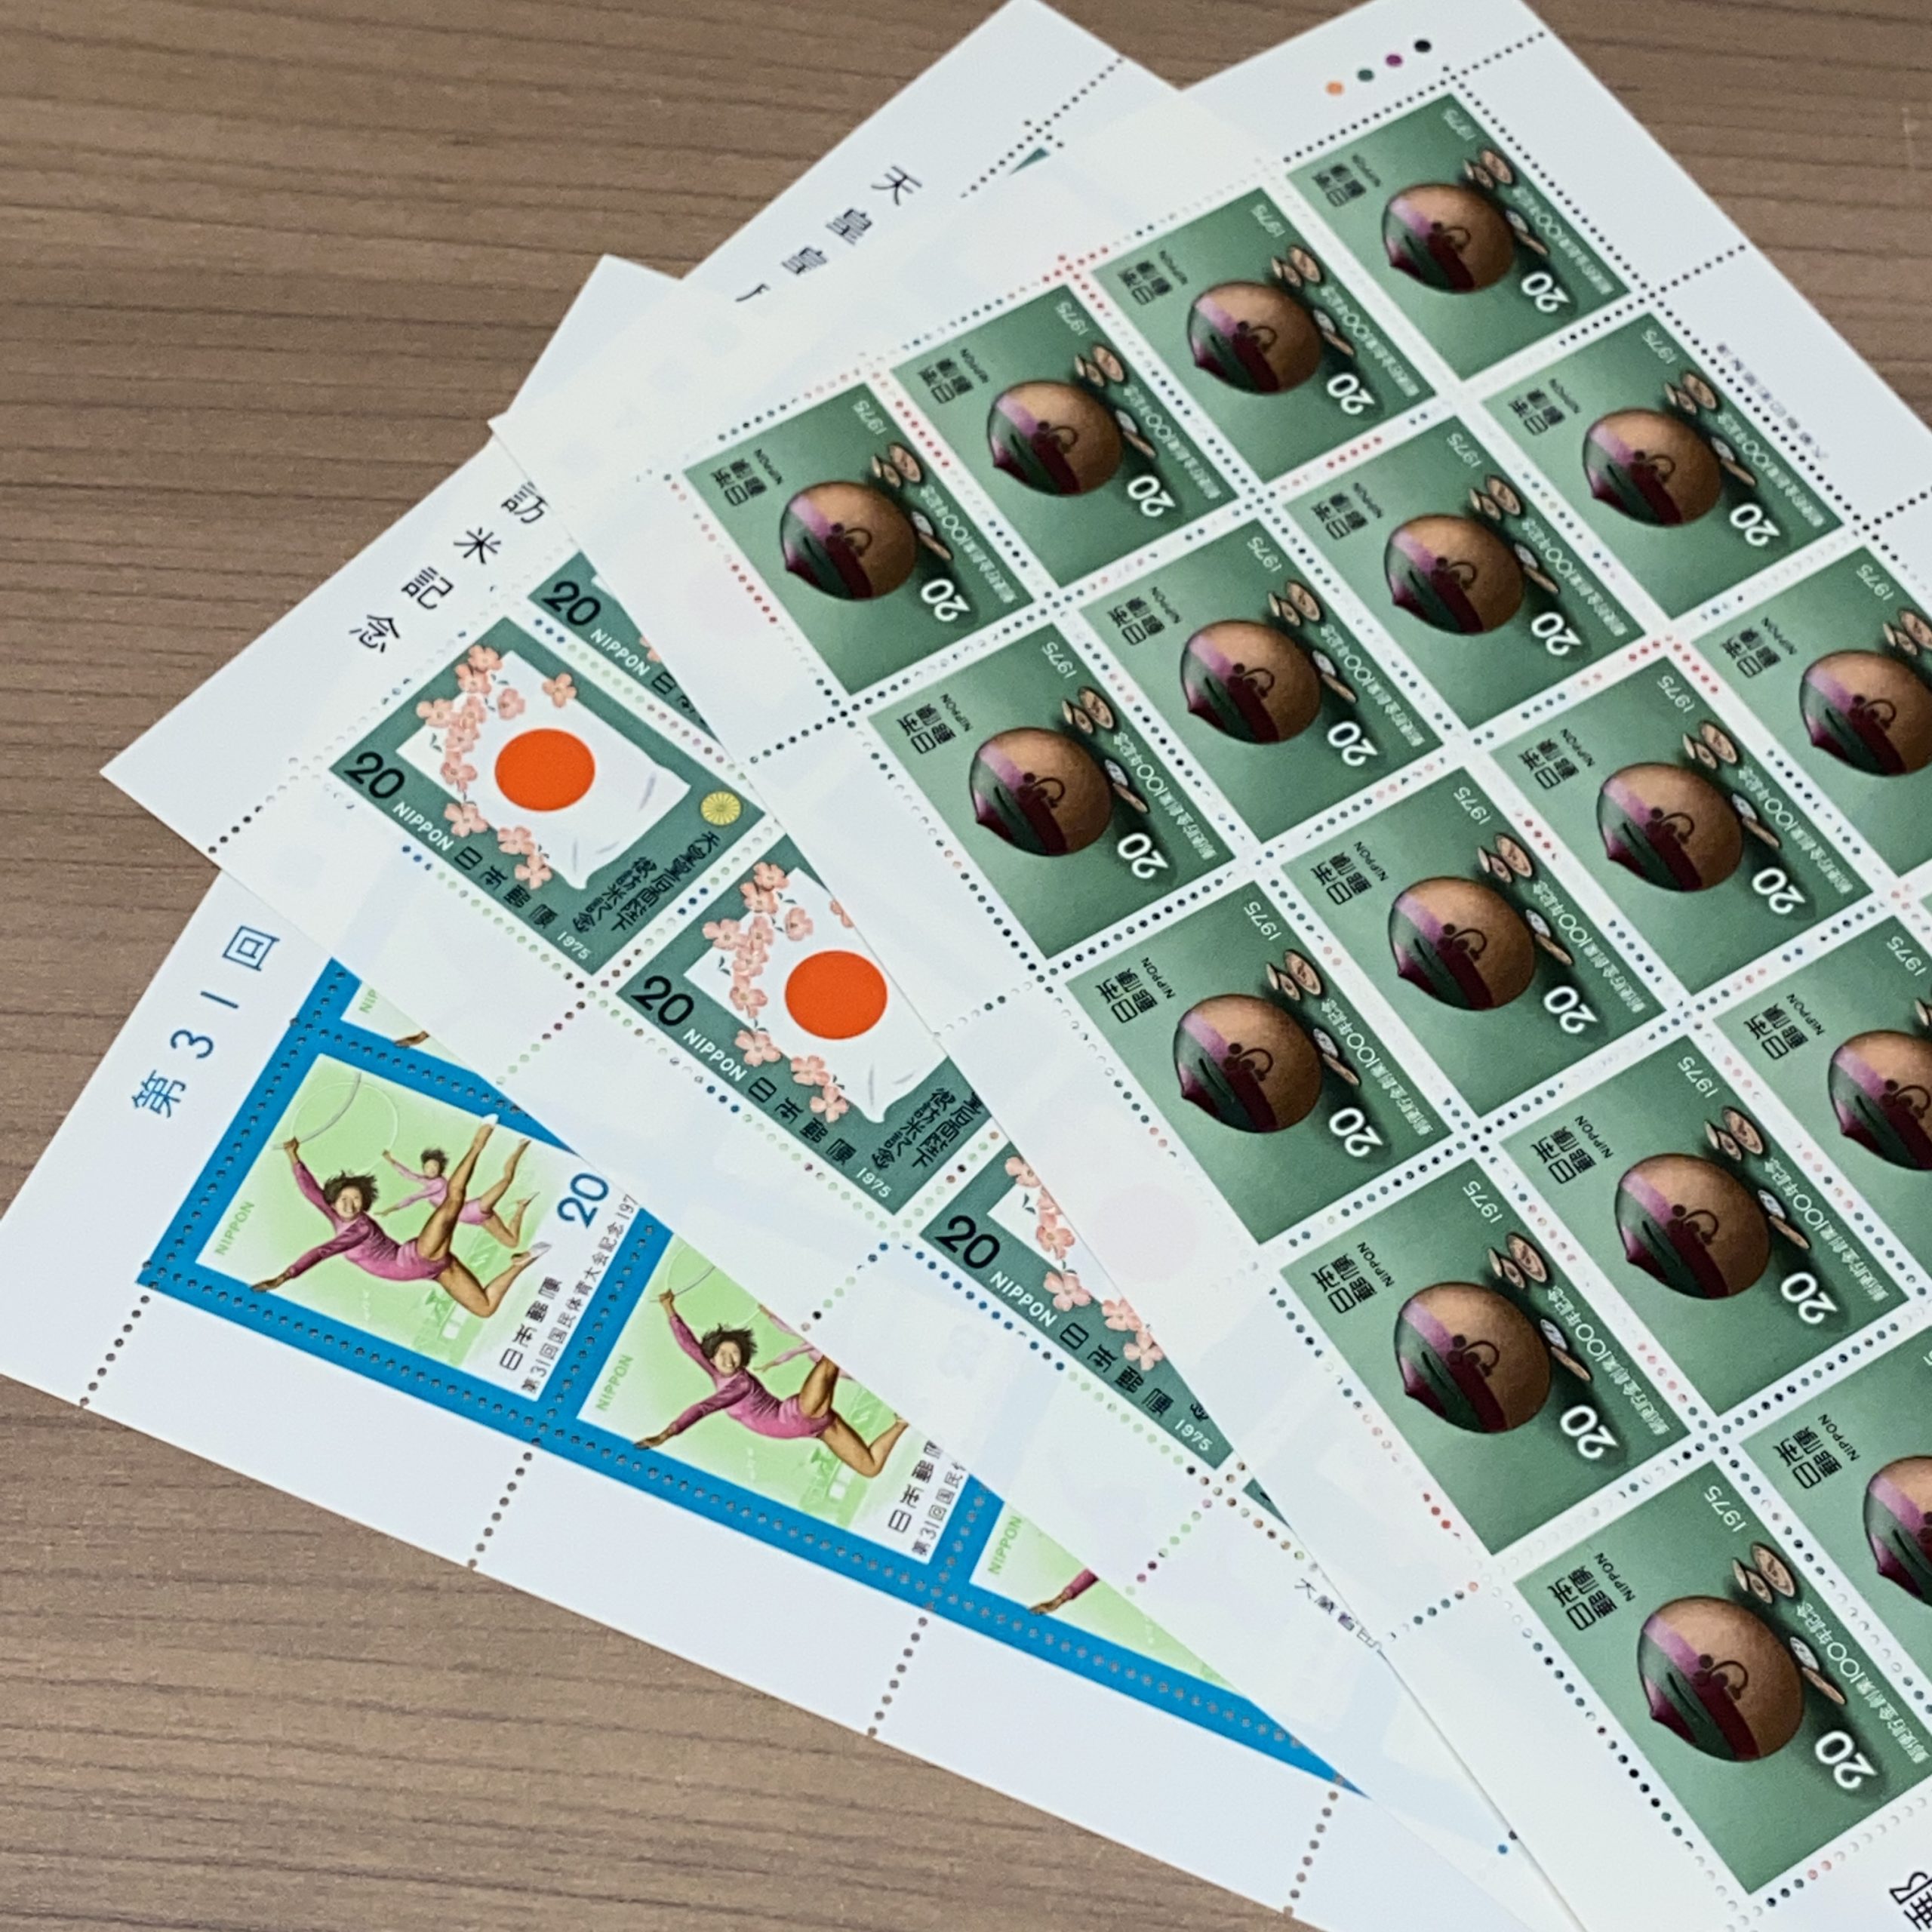 日本シート切手 20円×20面